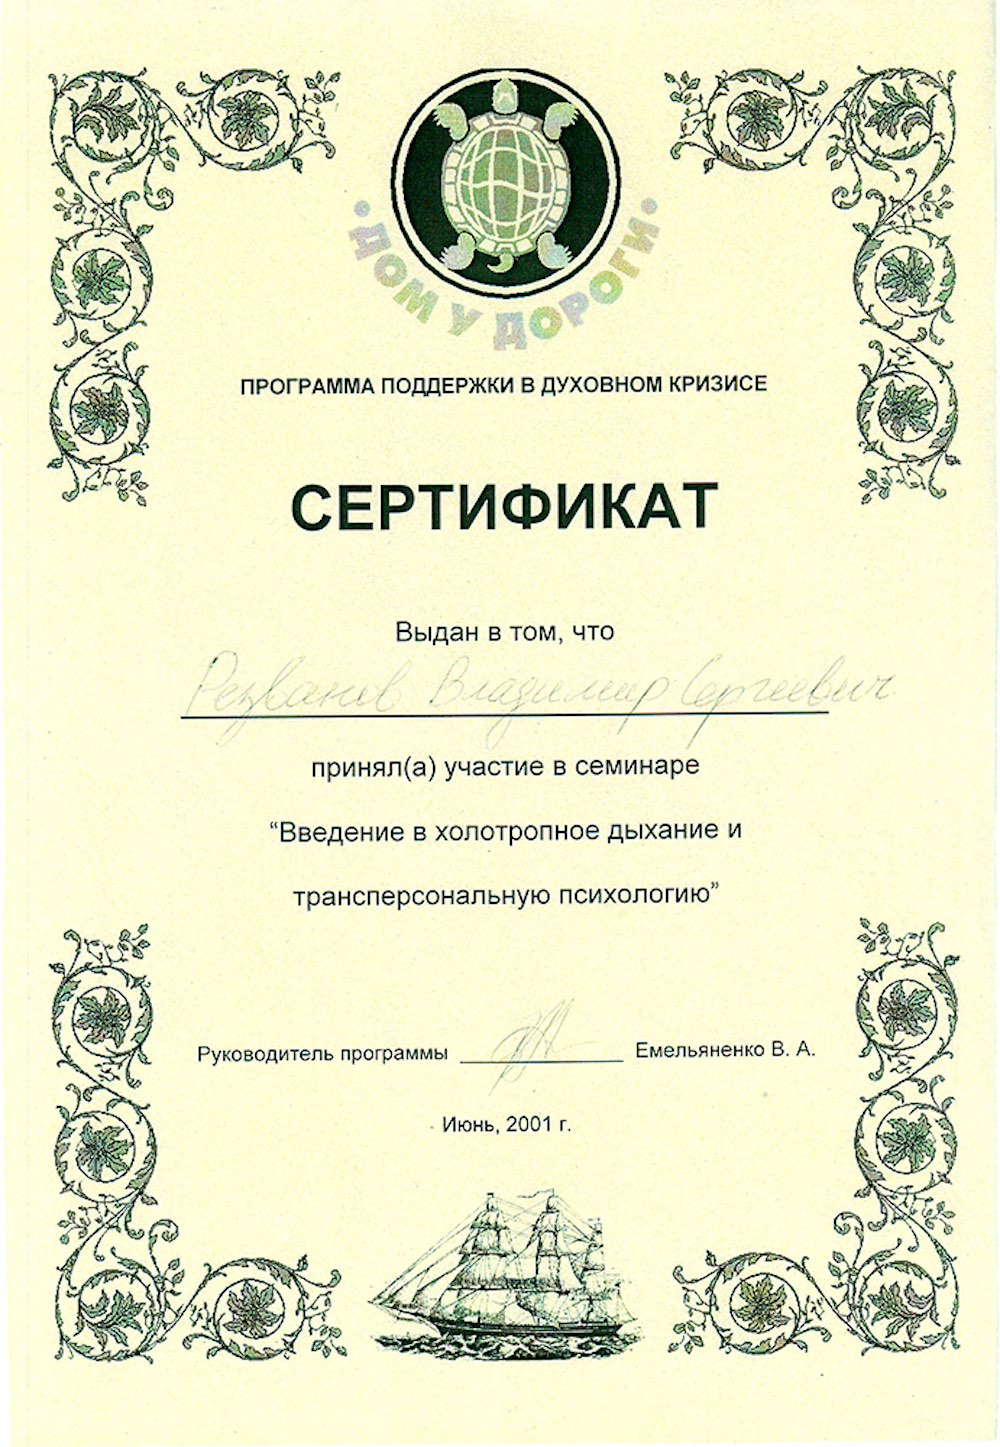 Сертификат участника семинара "Холотропное Дыхание"